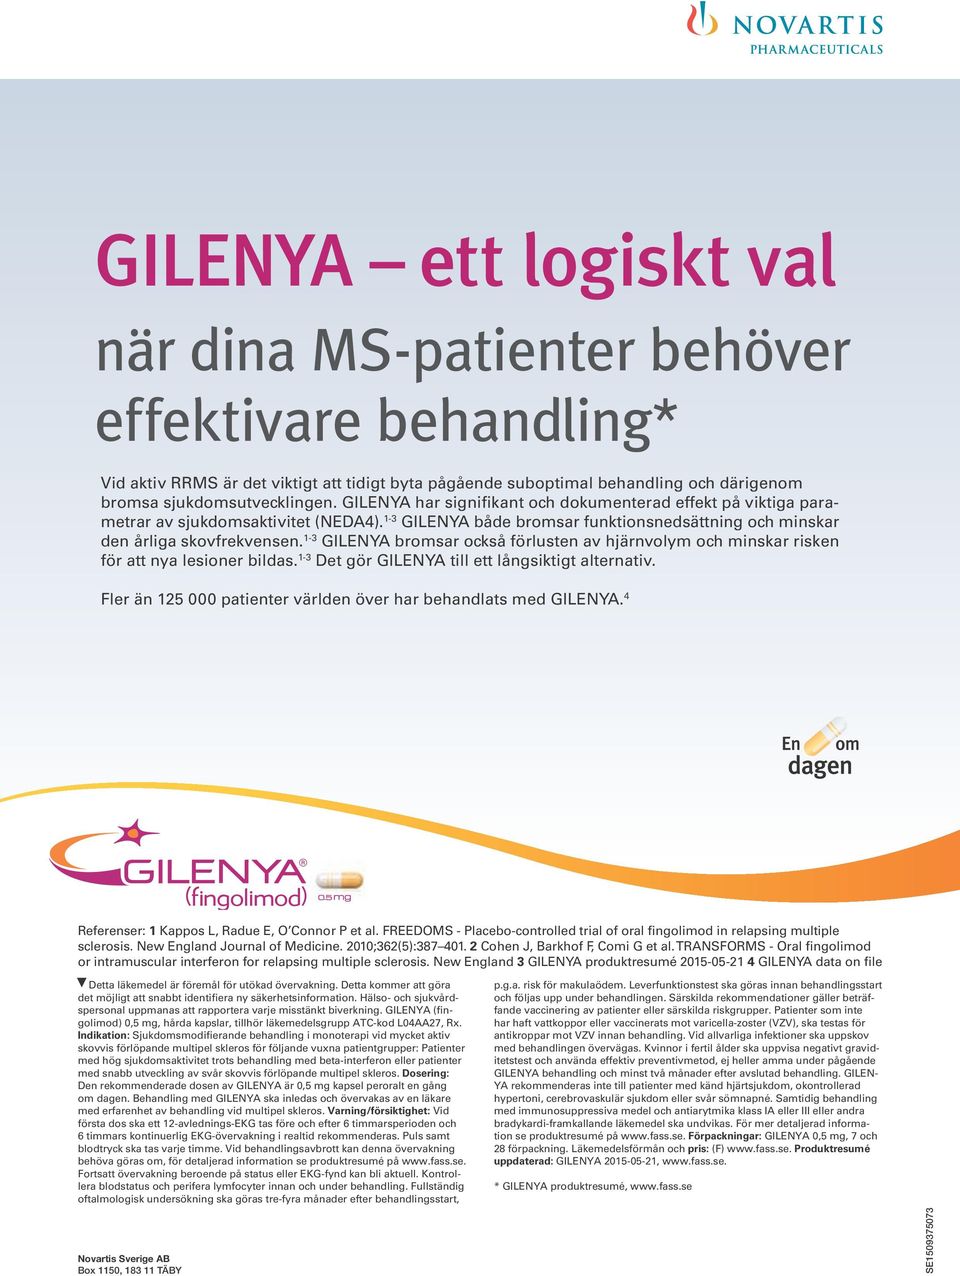 1-3 GILENYA bromsar också förlusten av hjärnvolym och minskar risken för att nya lesioner bildas. 1-3 Det gör GILENYA till ett långsiktigt alternativ.